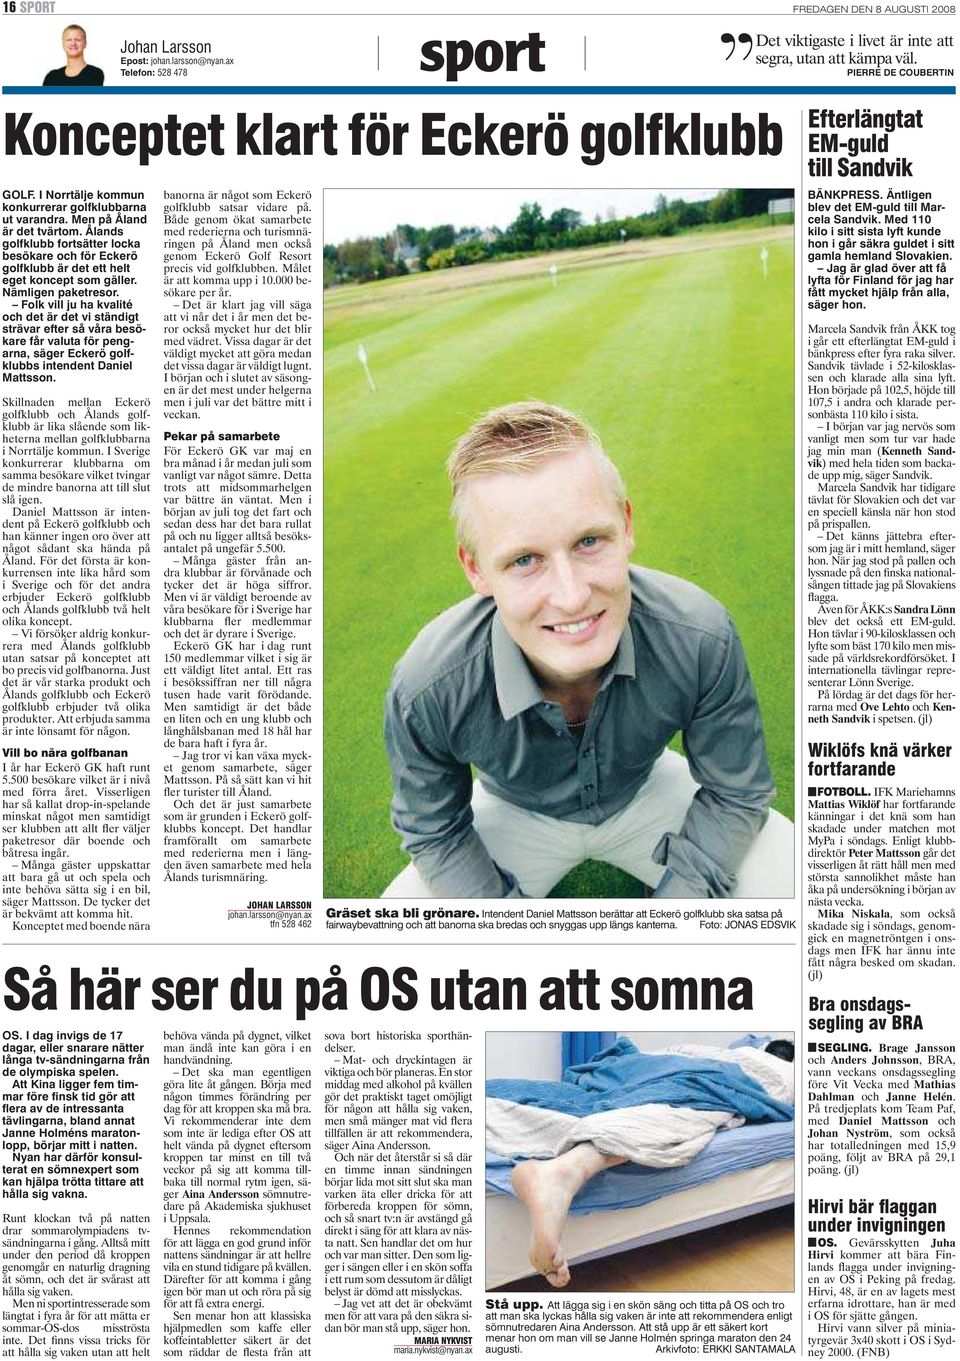 Daniel Mattsson är intendent på Eckerö golfklubb och han känner ingen oro över att något sådant ska hända på Åland.